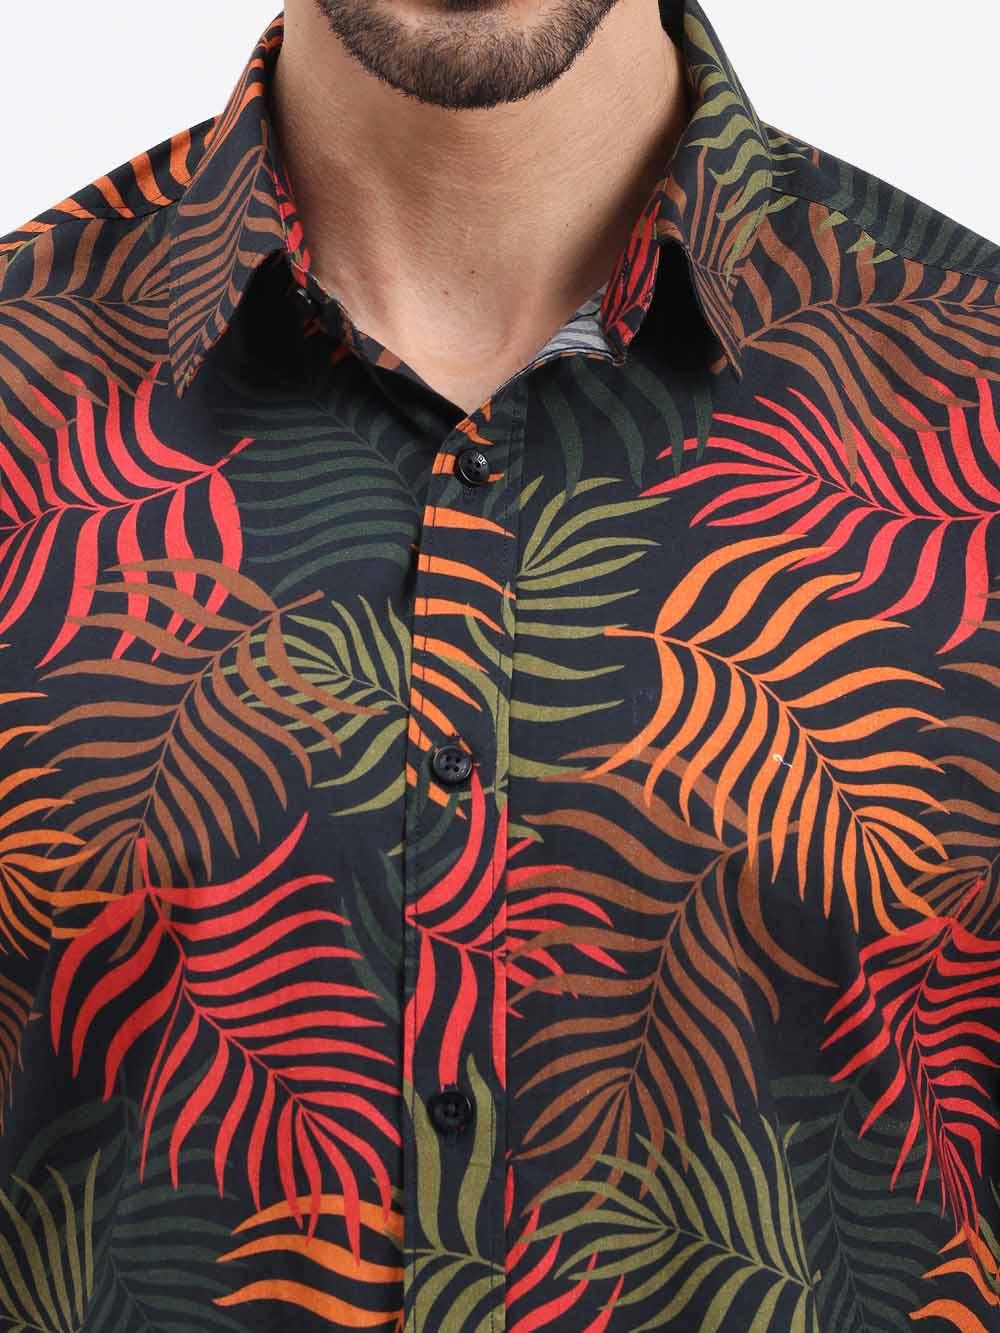 Palm Leaves Printed Cotton Half Sleeve Shirt - Guniaa Fashions